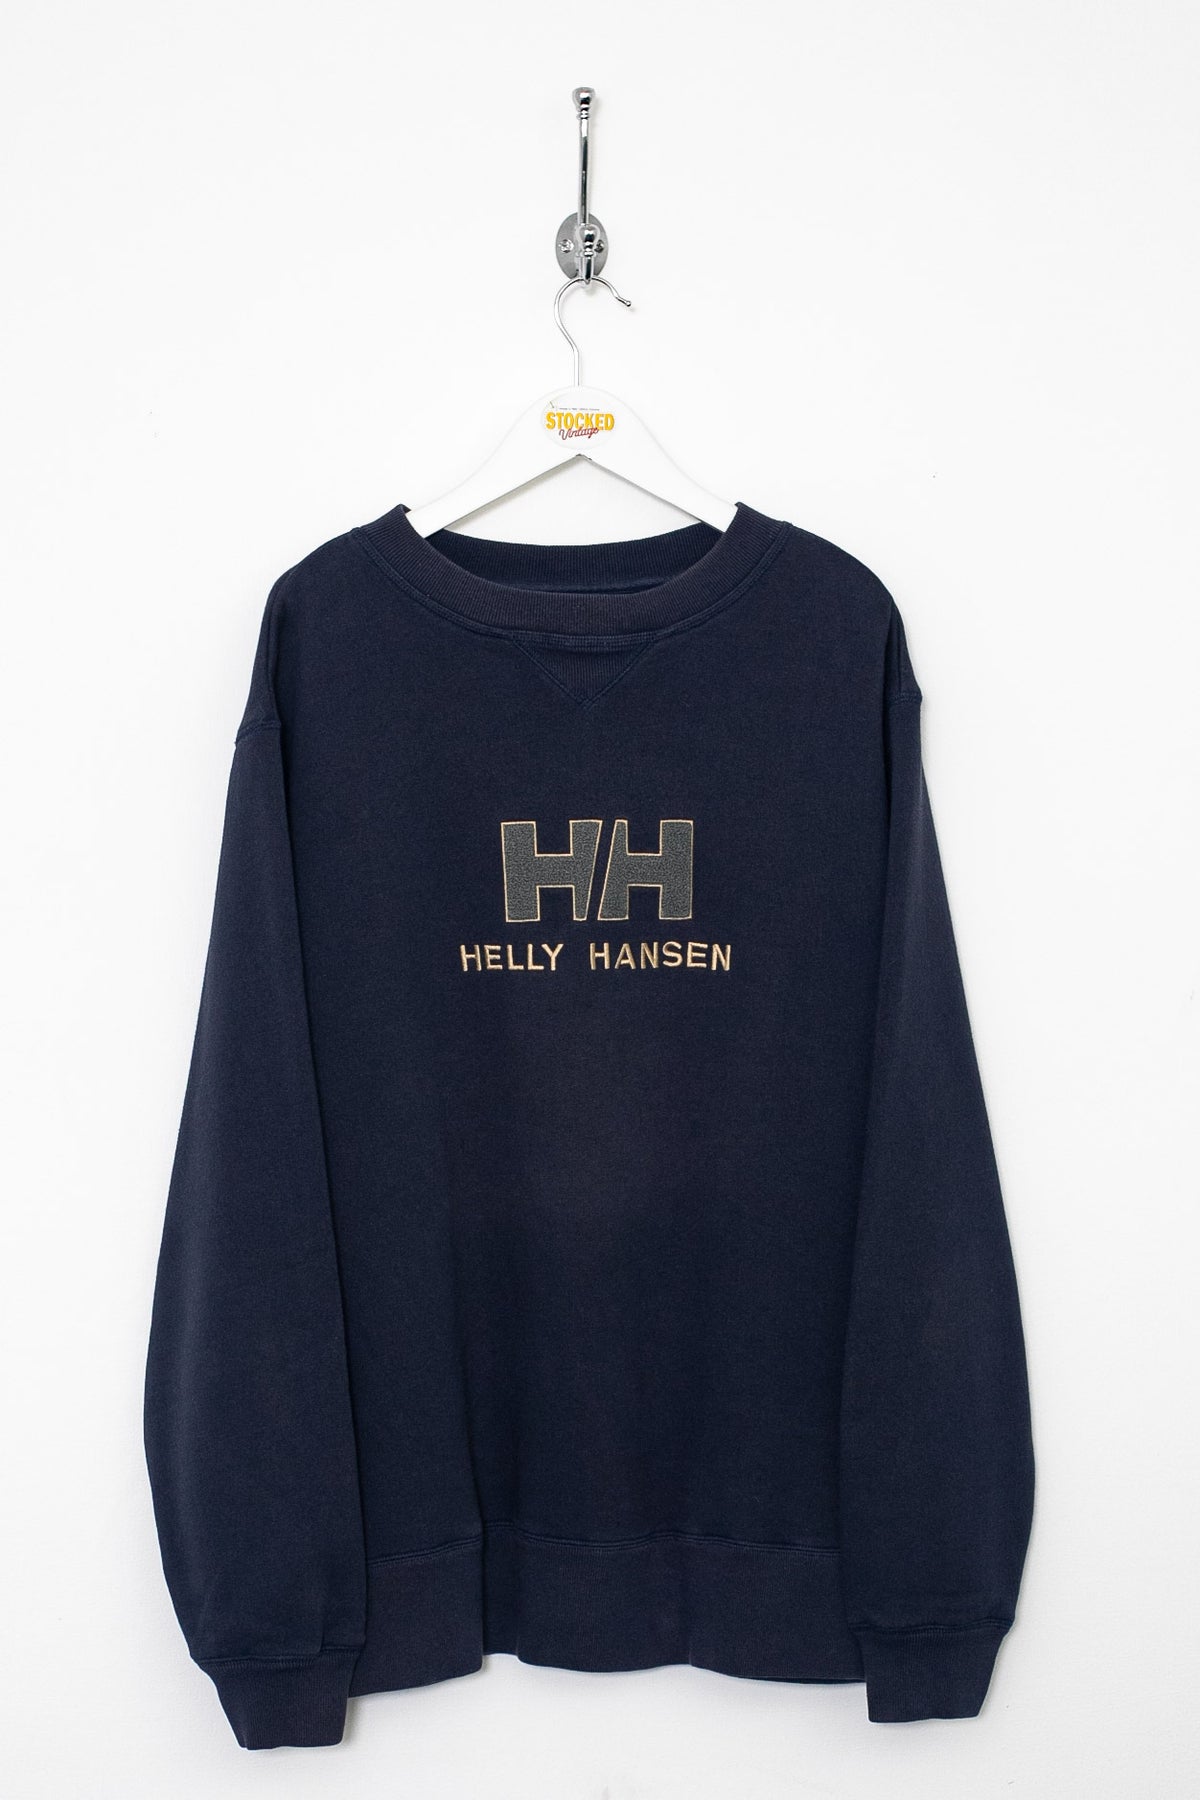 00s Helly Hansen Sweatshirt (L)